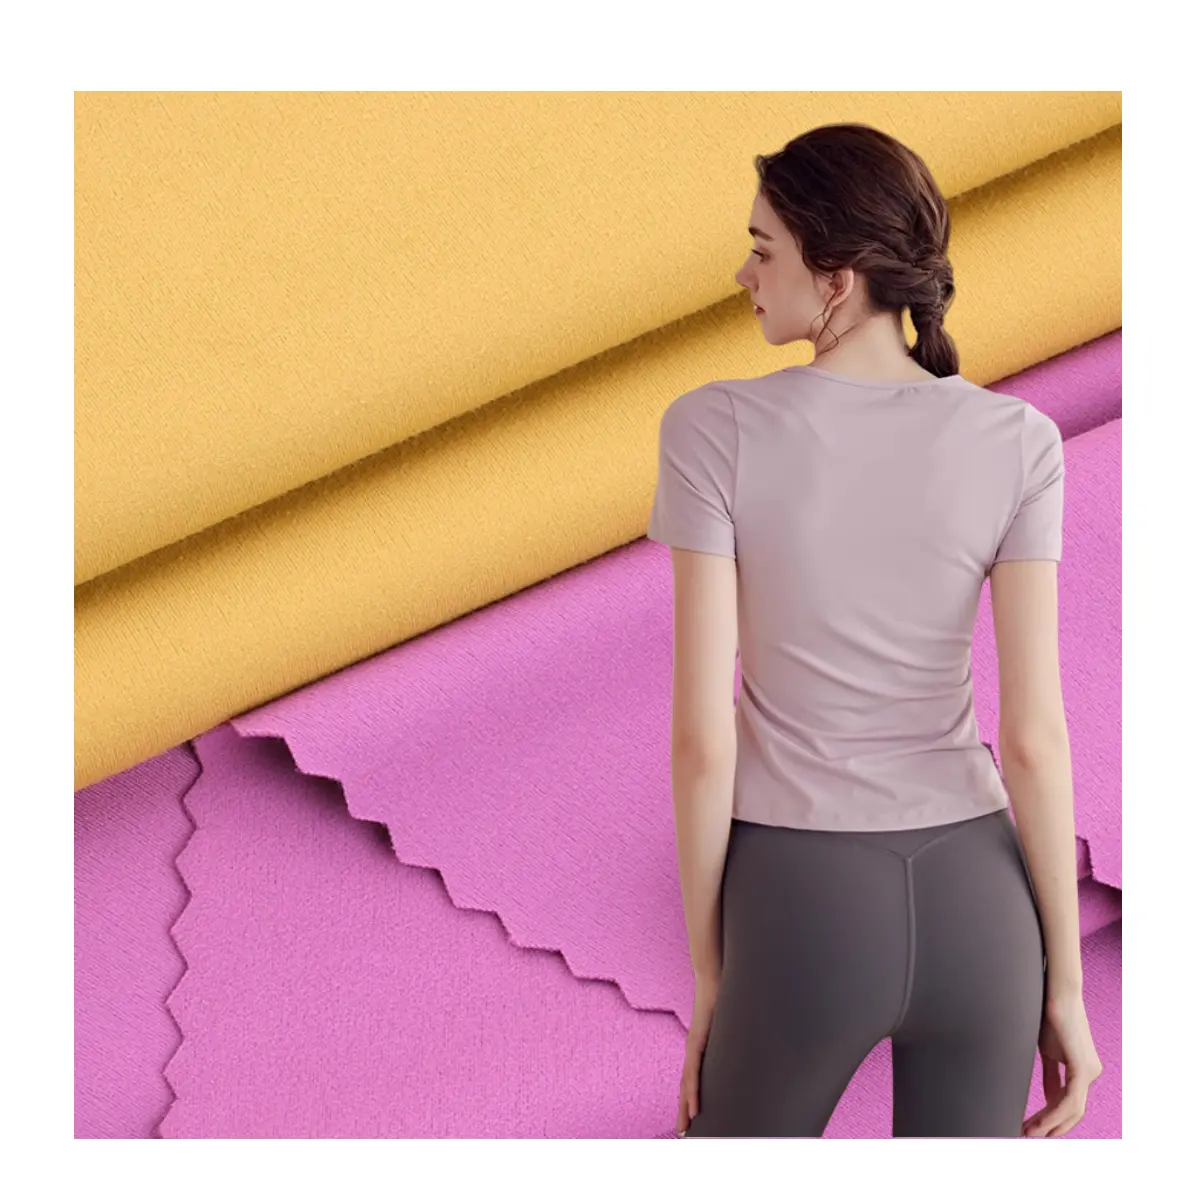 Lulu couleur unie tricot 4 voies stretch 75 nylon 25 spandex jersey tissu maillots de bain pantalons de yoga vêtements de sport leggings